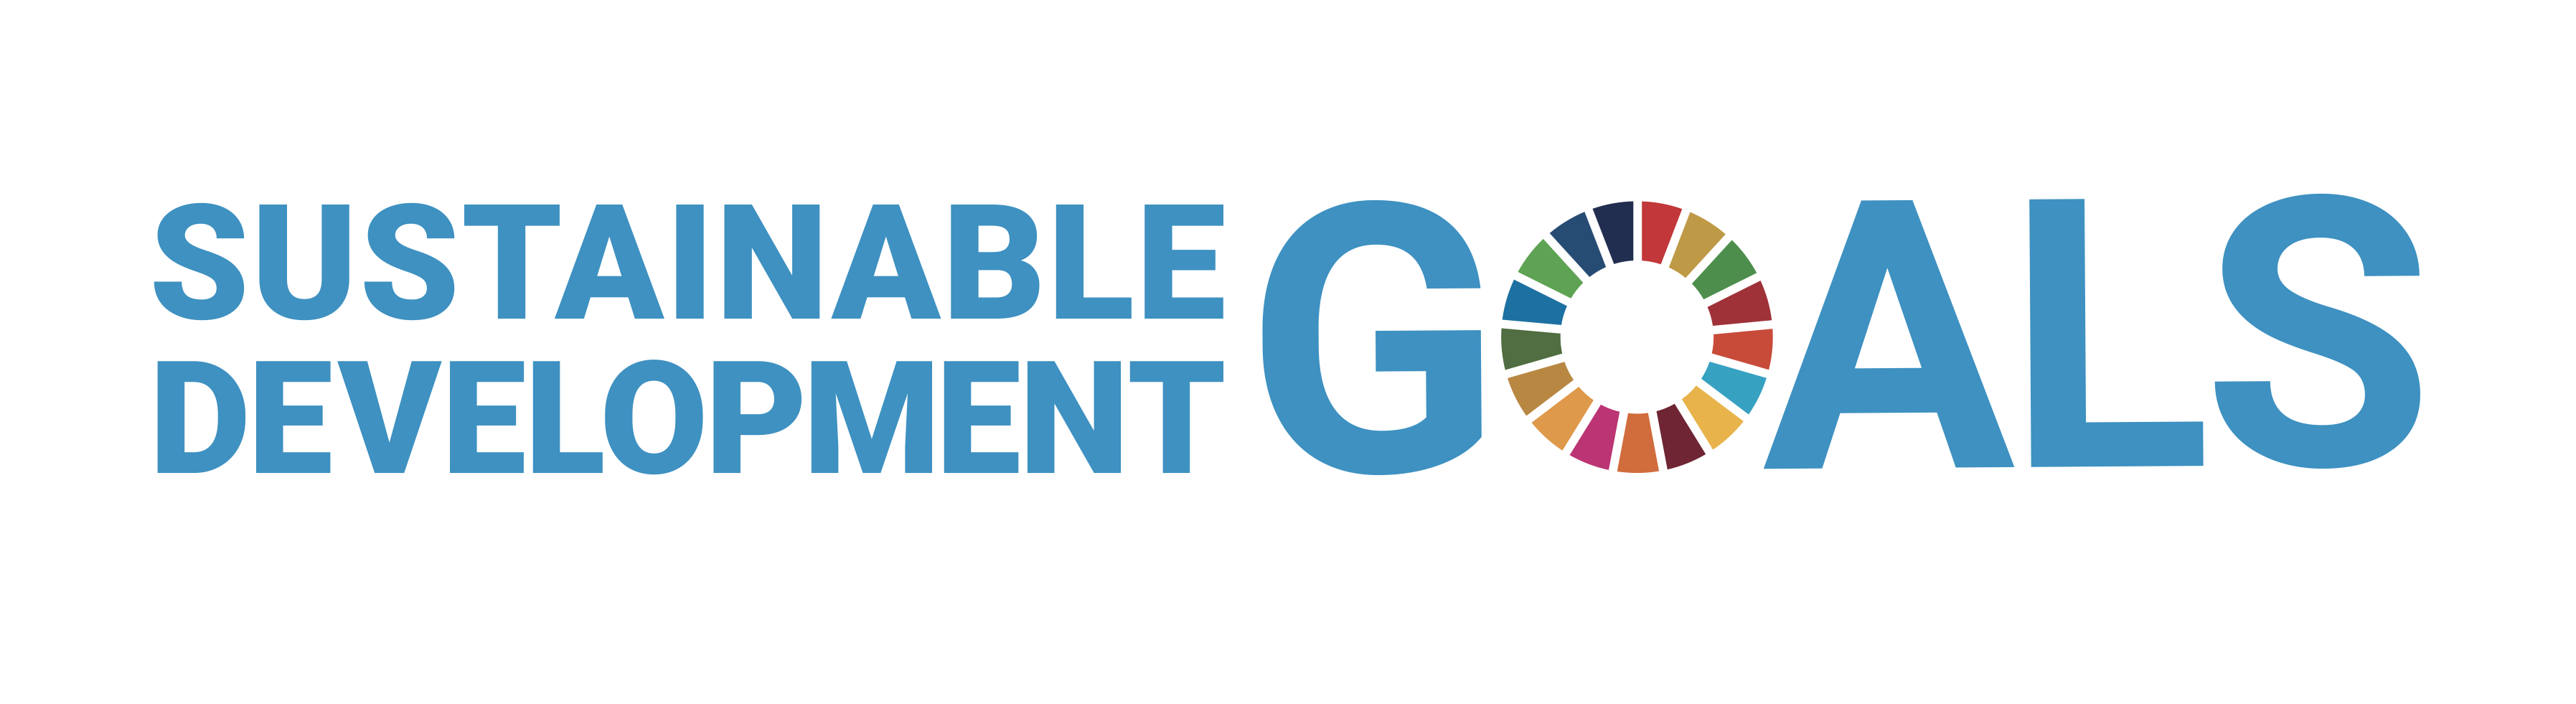 株式会社サンライトは持続可能な開発目標(SDGs)を支援しています。